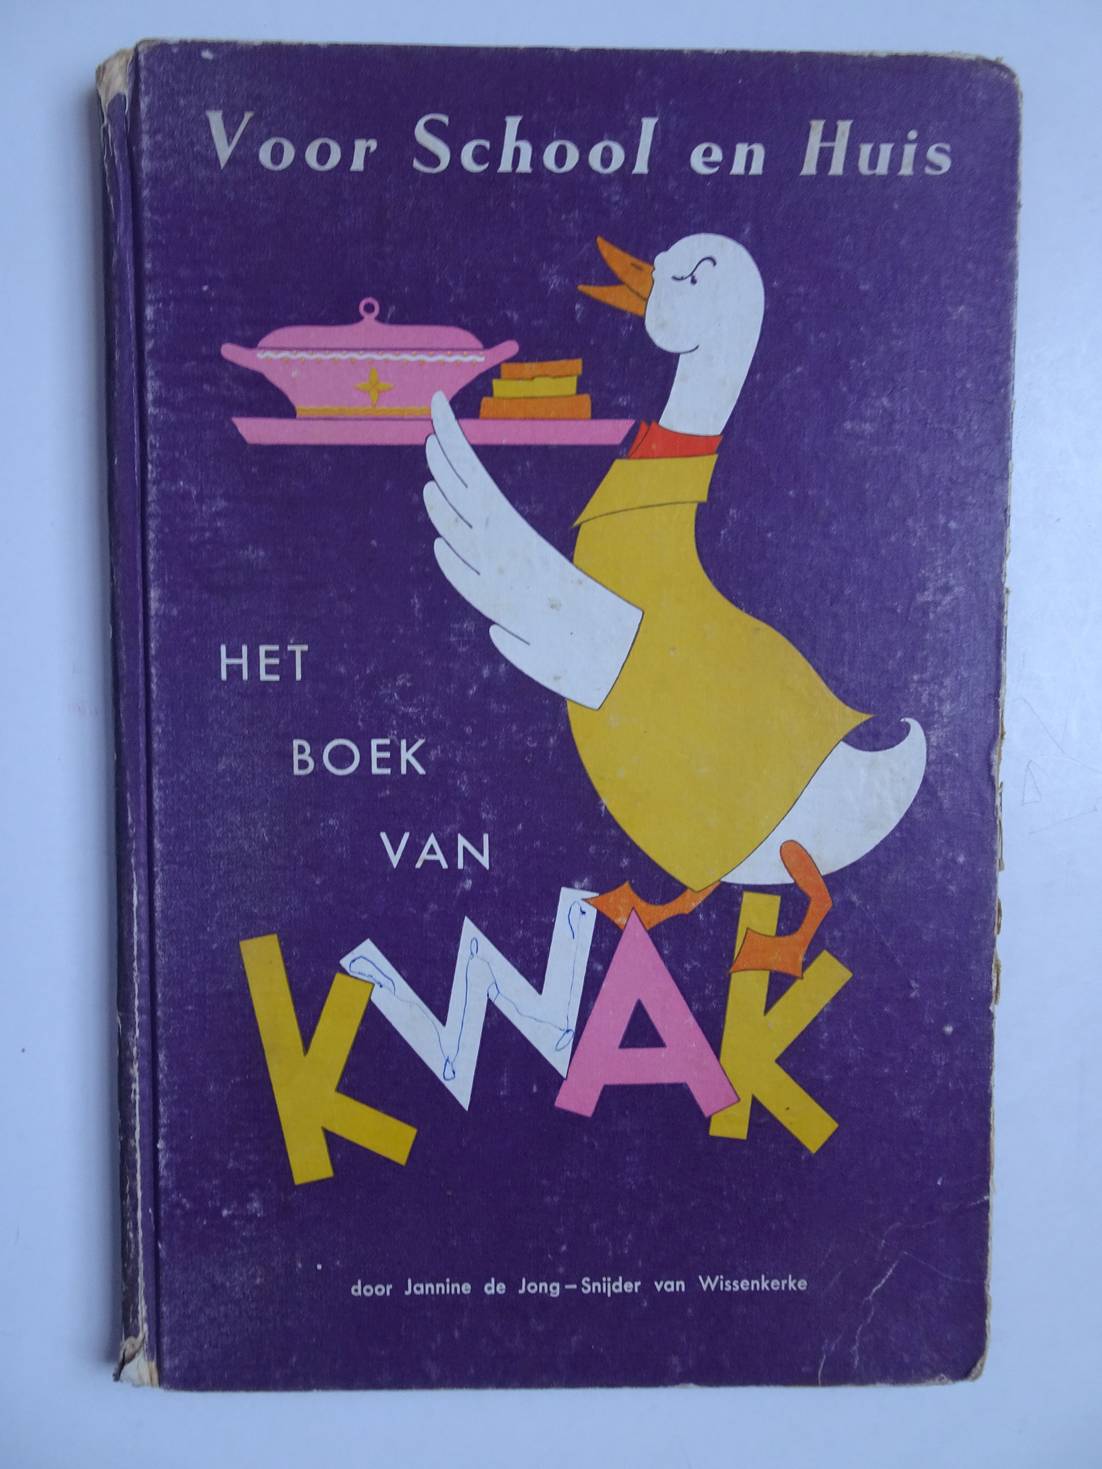 Jong- Snijder van Wissenkerke, Jannine de & Piet Mare. - Voor School en Huis. Het Boek van Kwak.